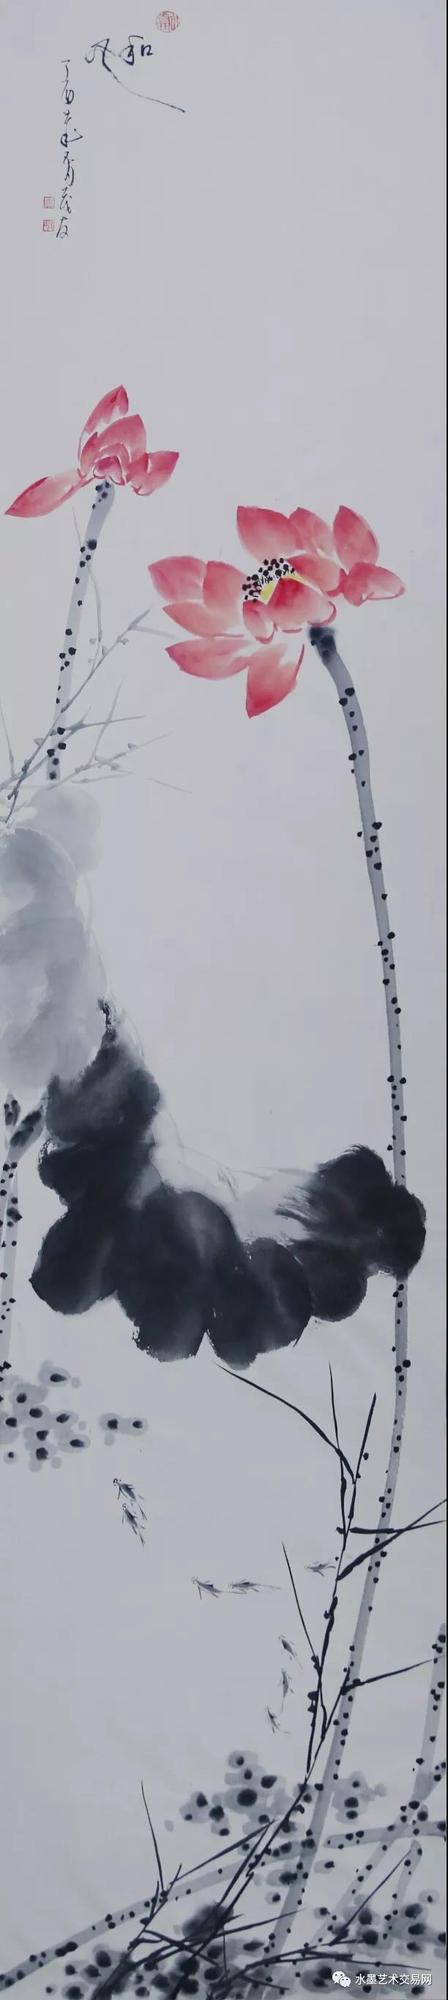 在蔡茂友水墨荷花画作中,充分地继承了中国水墨画的大写意精神,继而